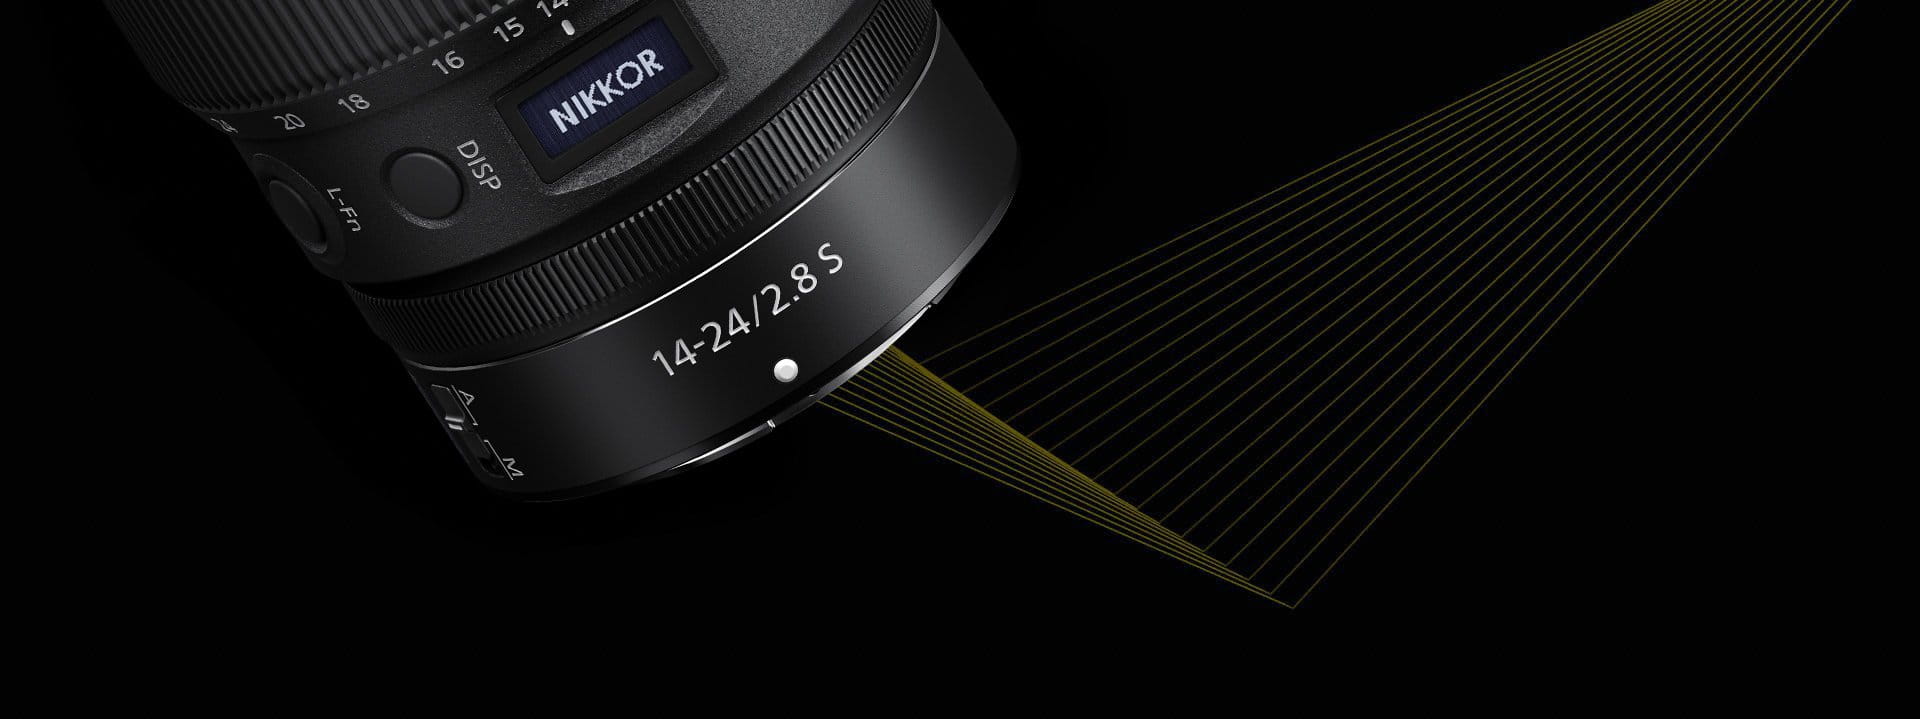 Obiektyw Nikon Nikkor Z 14-24 mm f/2.8 S